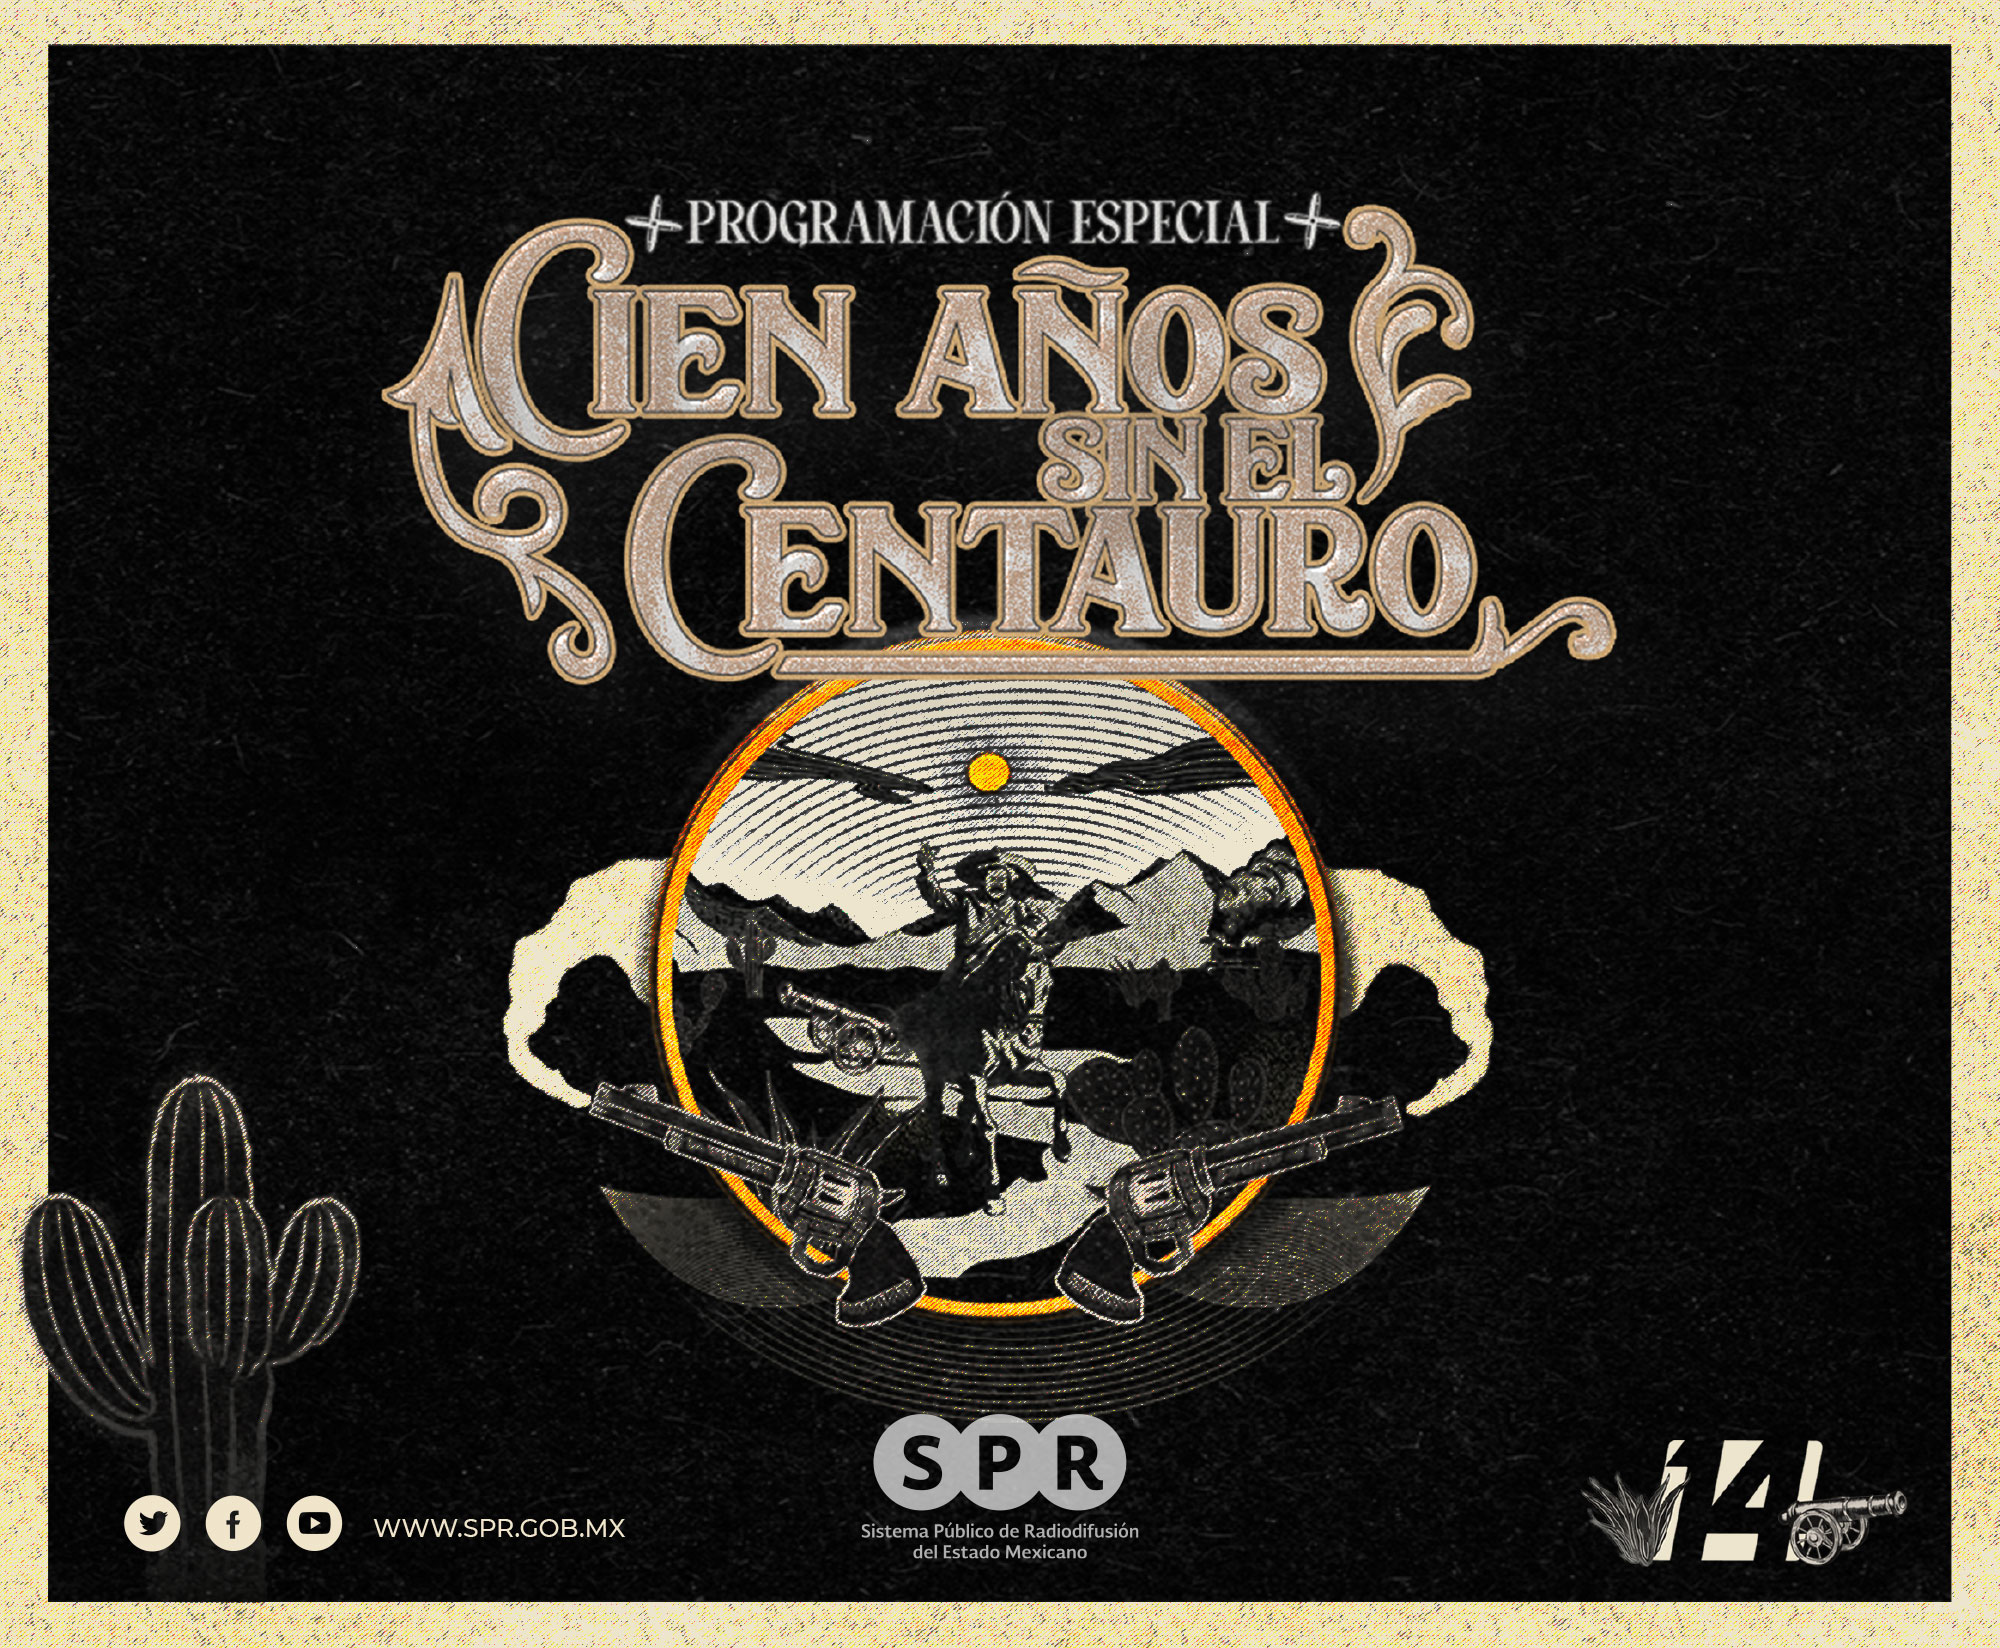 Canal Catorce conmemora a Pancho Villa con la programación especial “Cien años sin el Centauro”